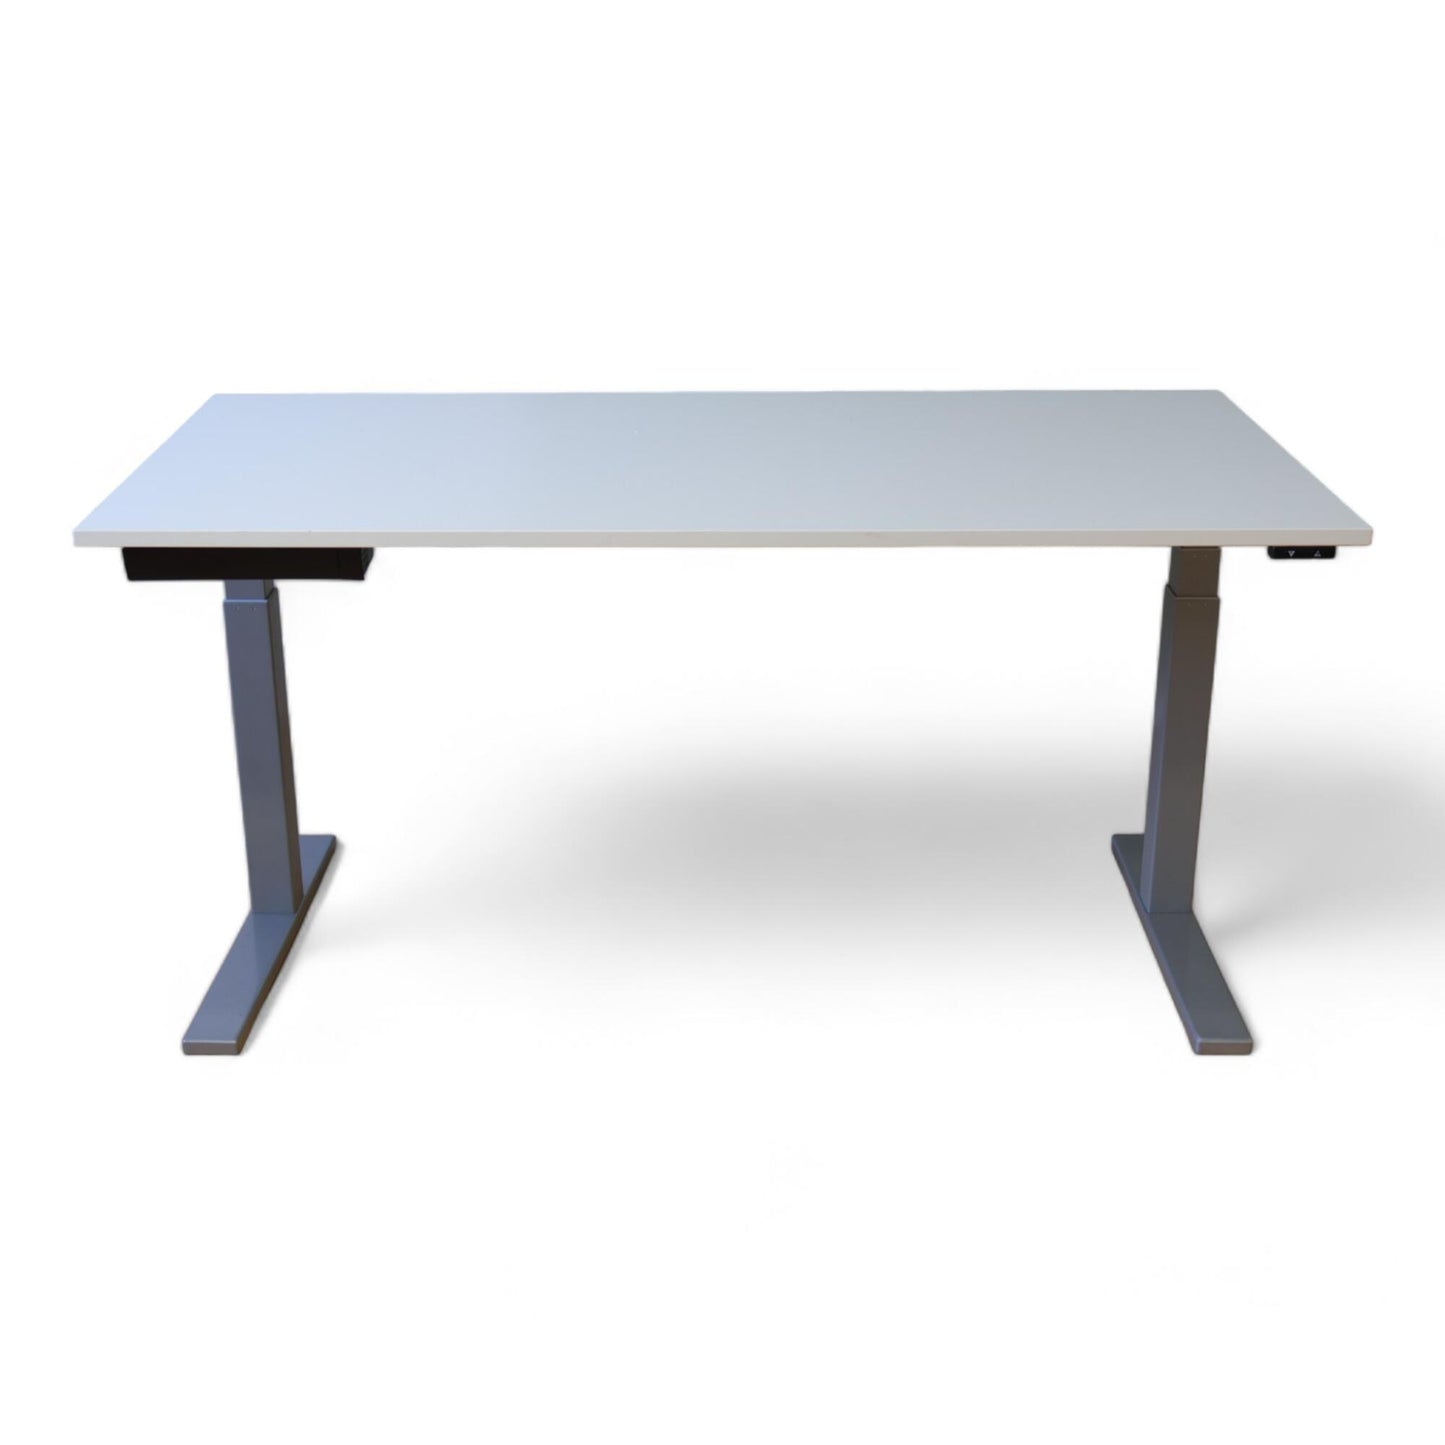 Kvalitetssikret | LINAK hev- og senkeskrivebord i hvit og grå